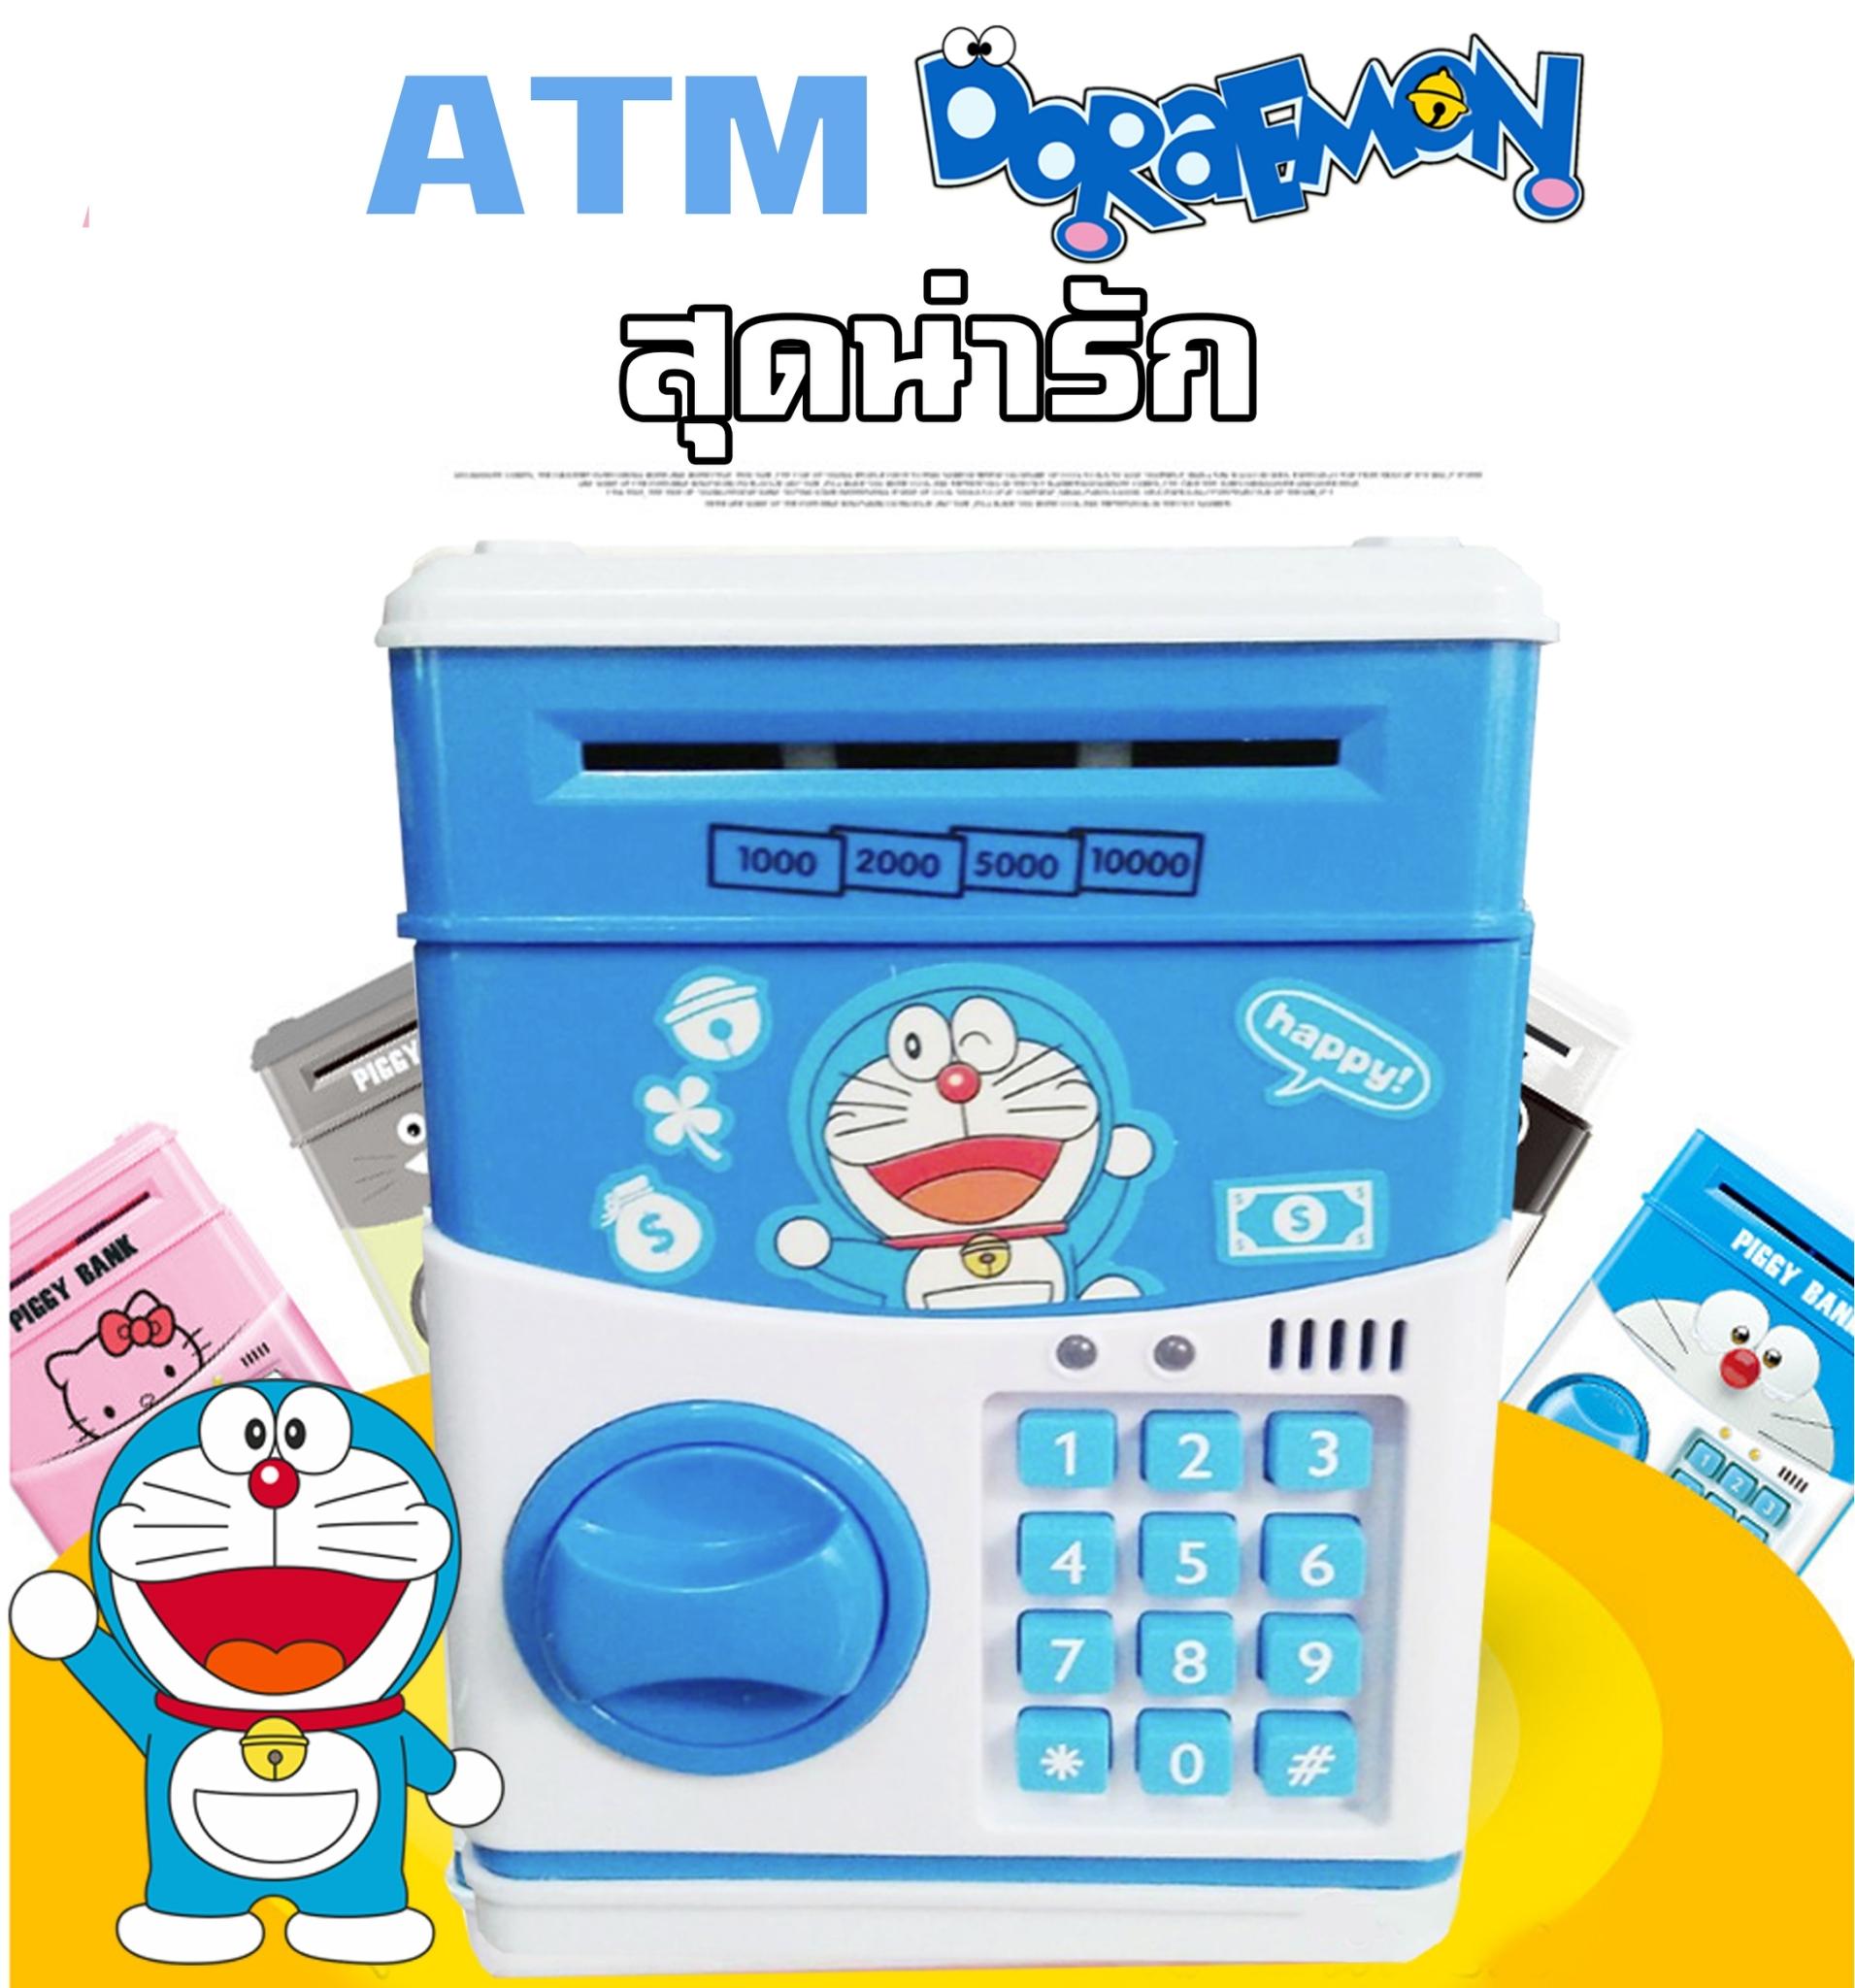 กระปุกออมสินตู้เซฟ สุดน่ารัก Doraemon (ATM)